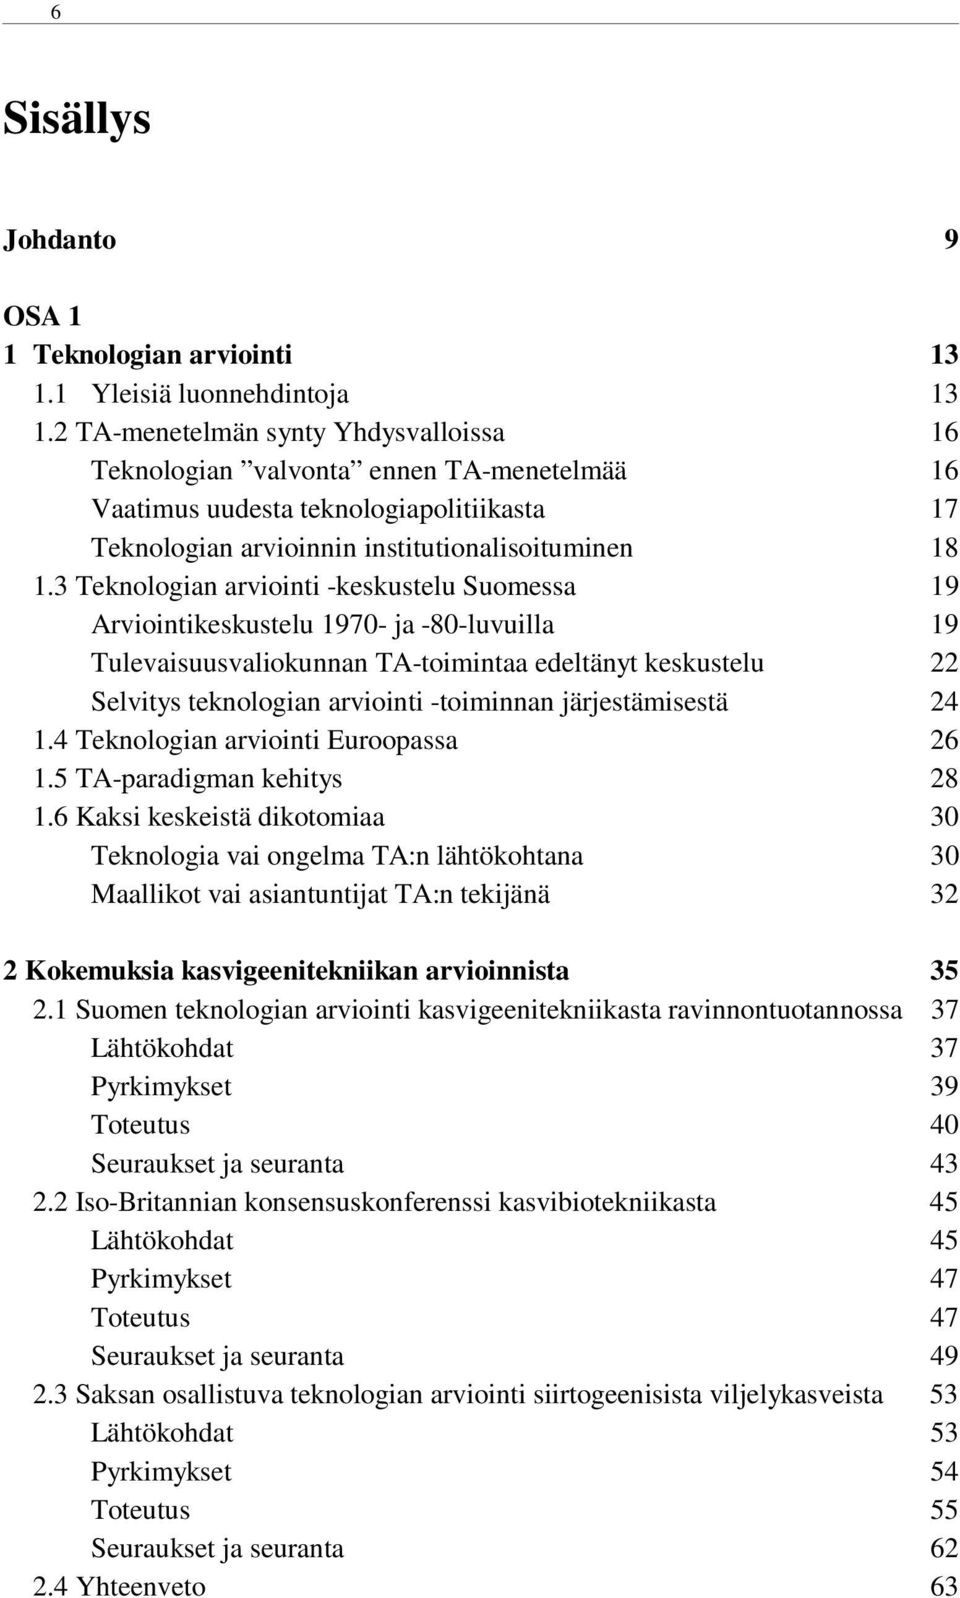 3 Teknologian arviointi -keskustelu Suomessa 19 Arviointikeskustelu 1970- ja -80-luvuilla 19 Tulevaisuusvaliokunnan TA-toimintaa edeltänyt keskustelu 22 Selvitys teknologian arviointi -toiminnan